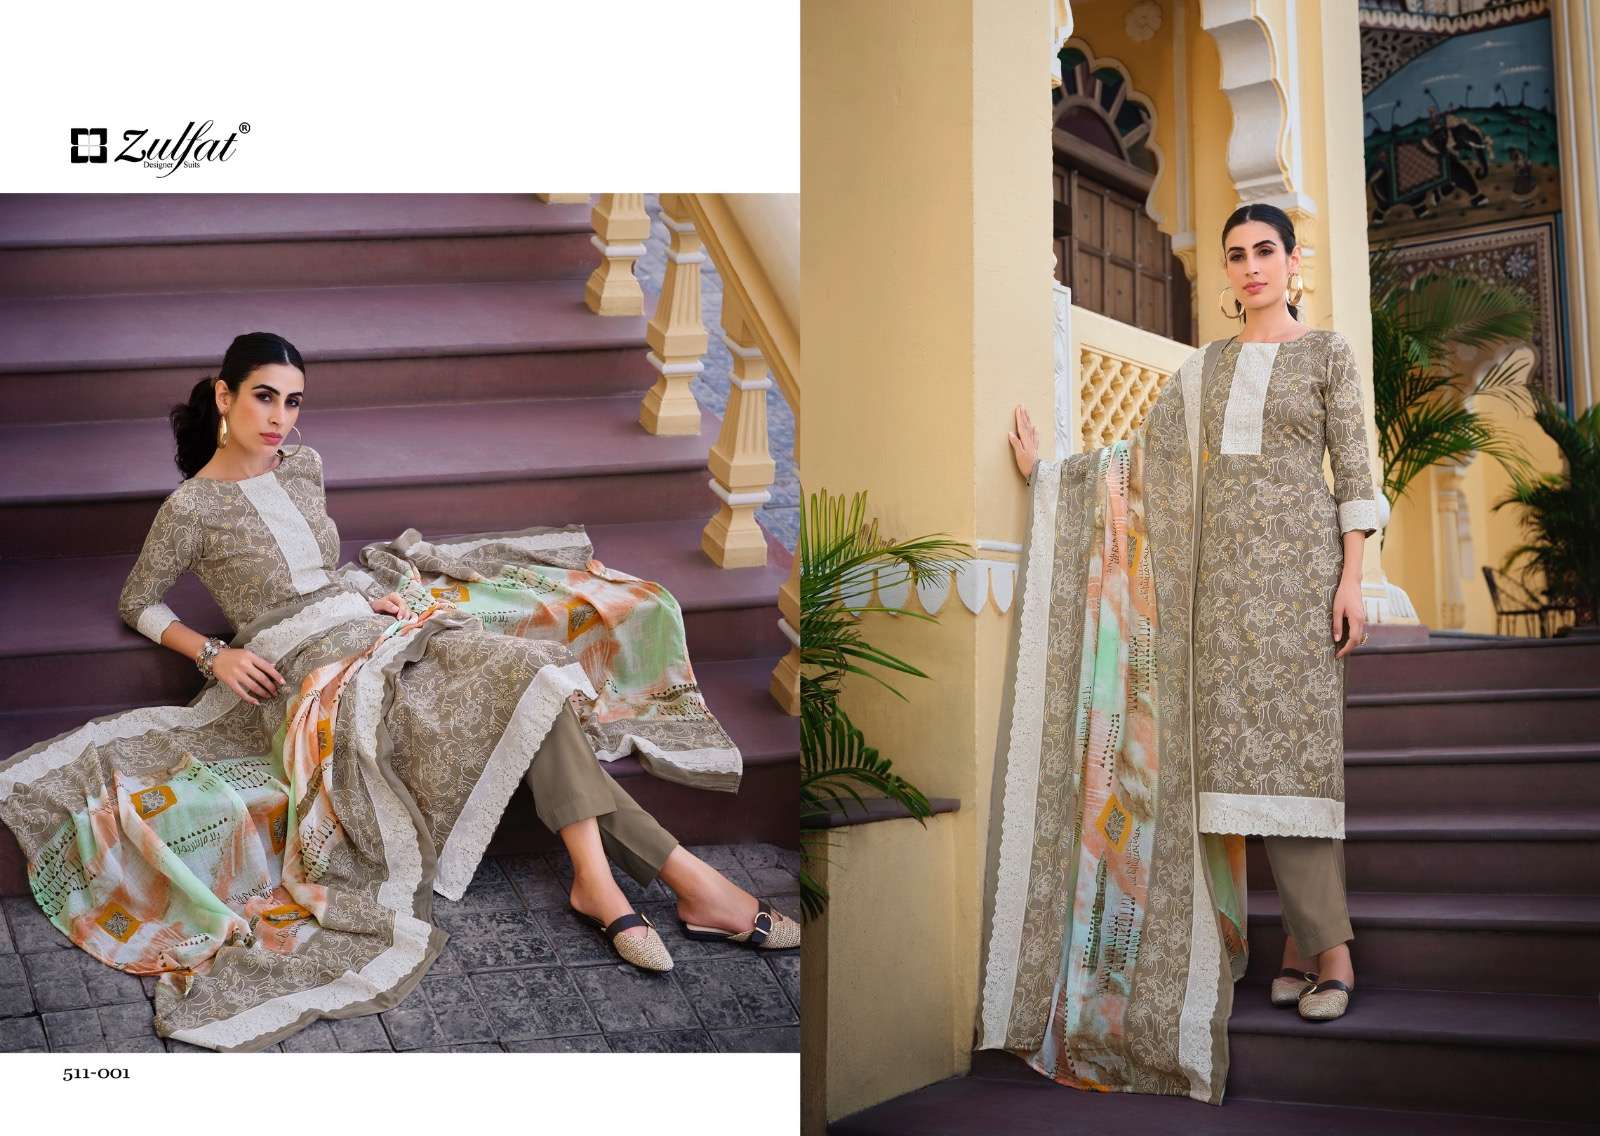 Buy Yellow Cotton Straight Kurta Salwar Suit Set (Kurta, Salwar, Dupatta)  for INR2297.50 | Biba India